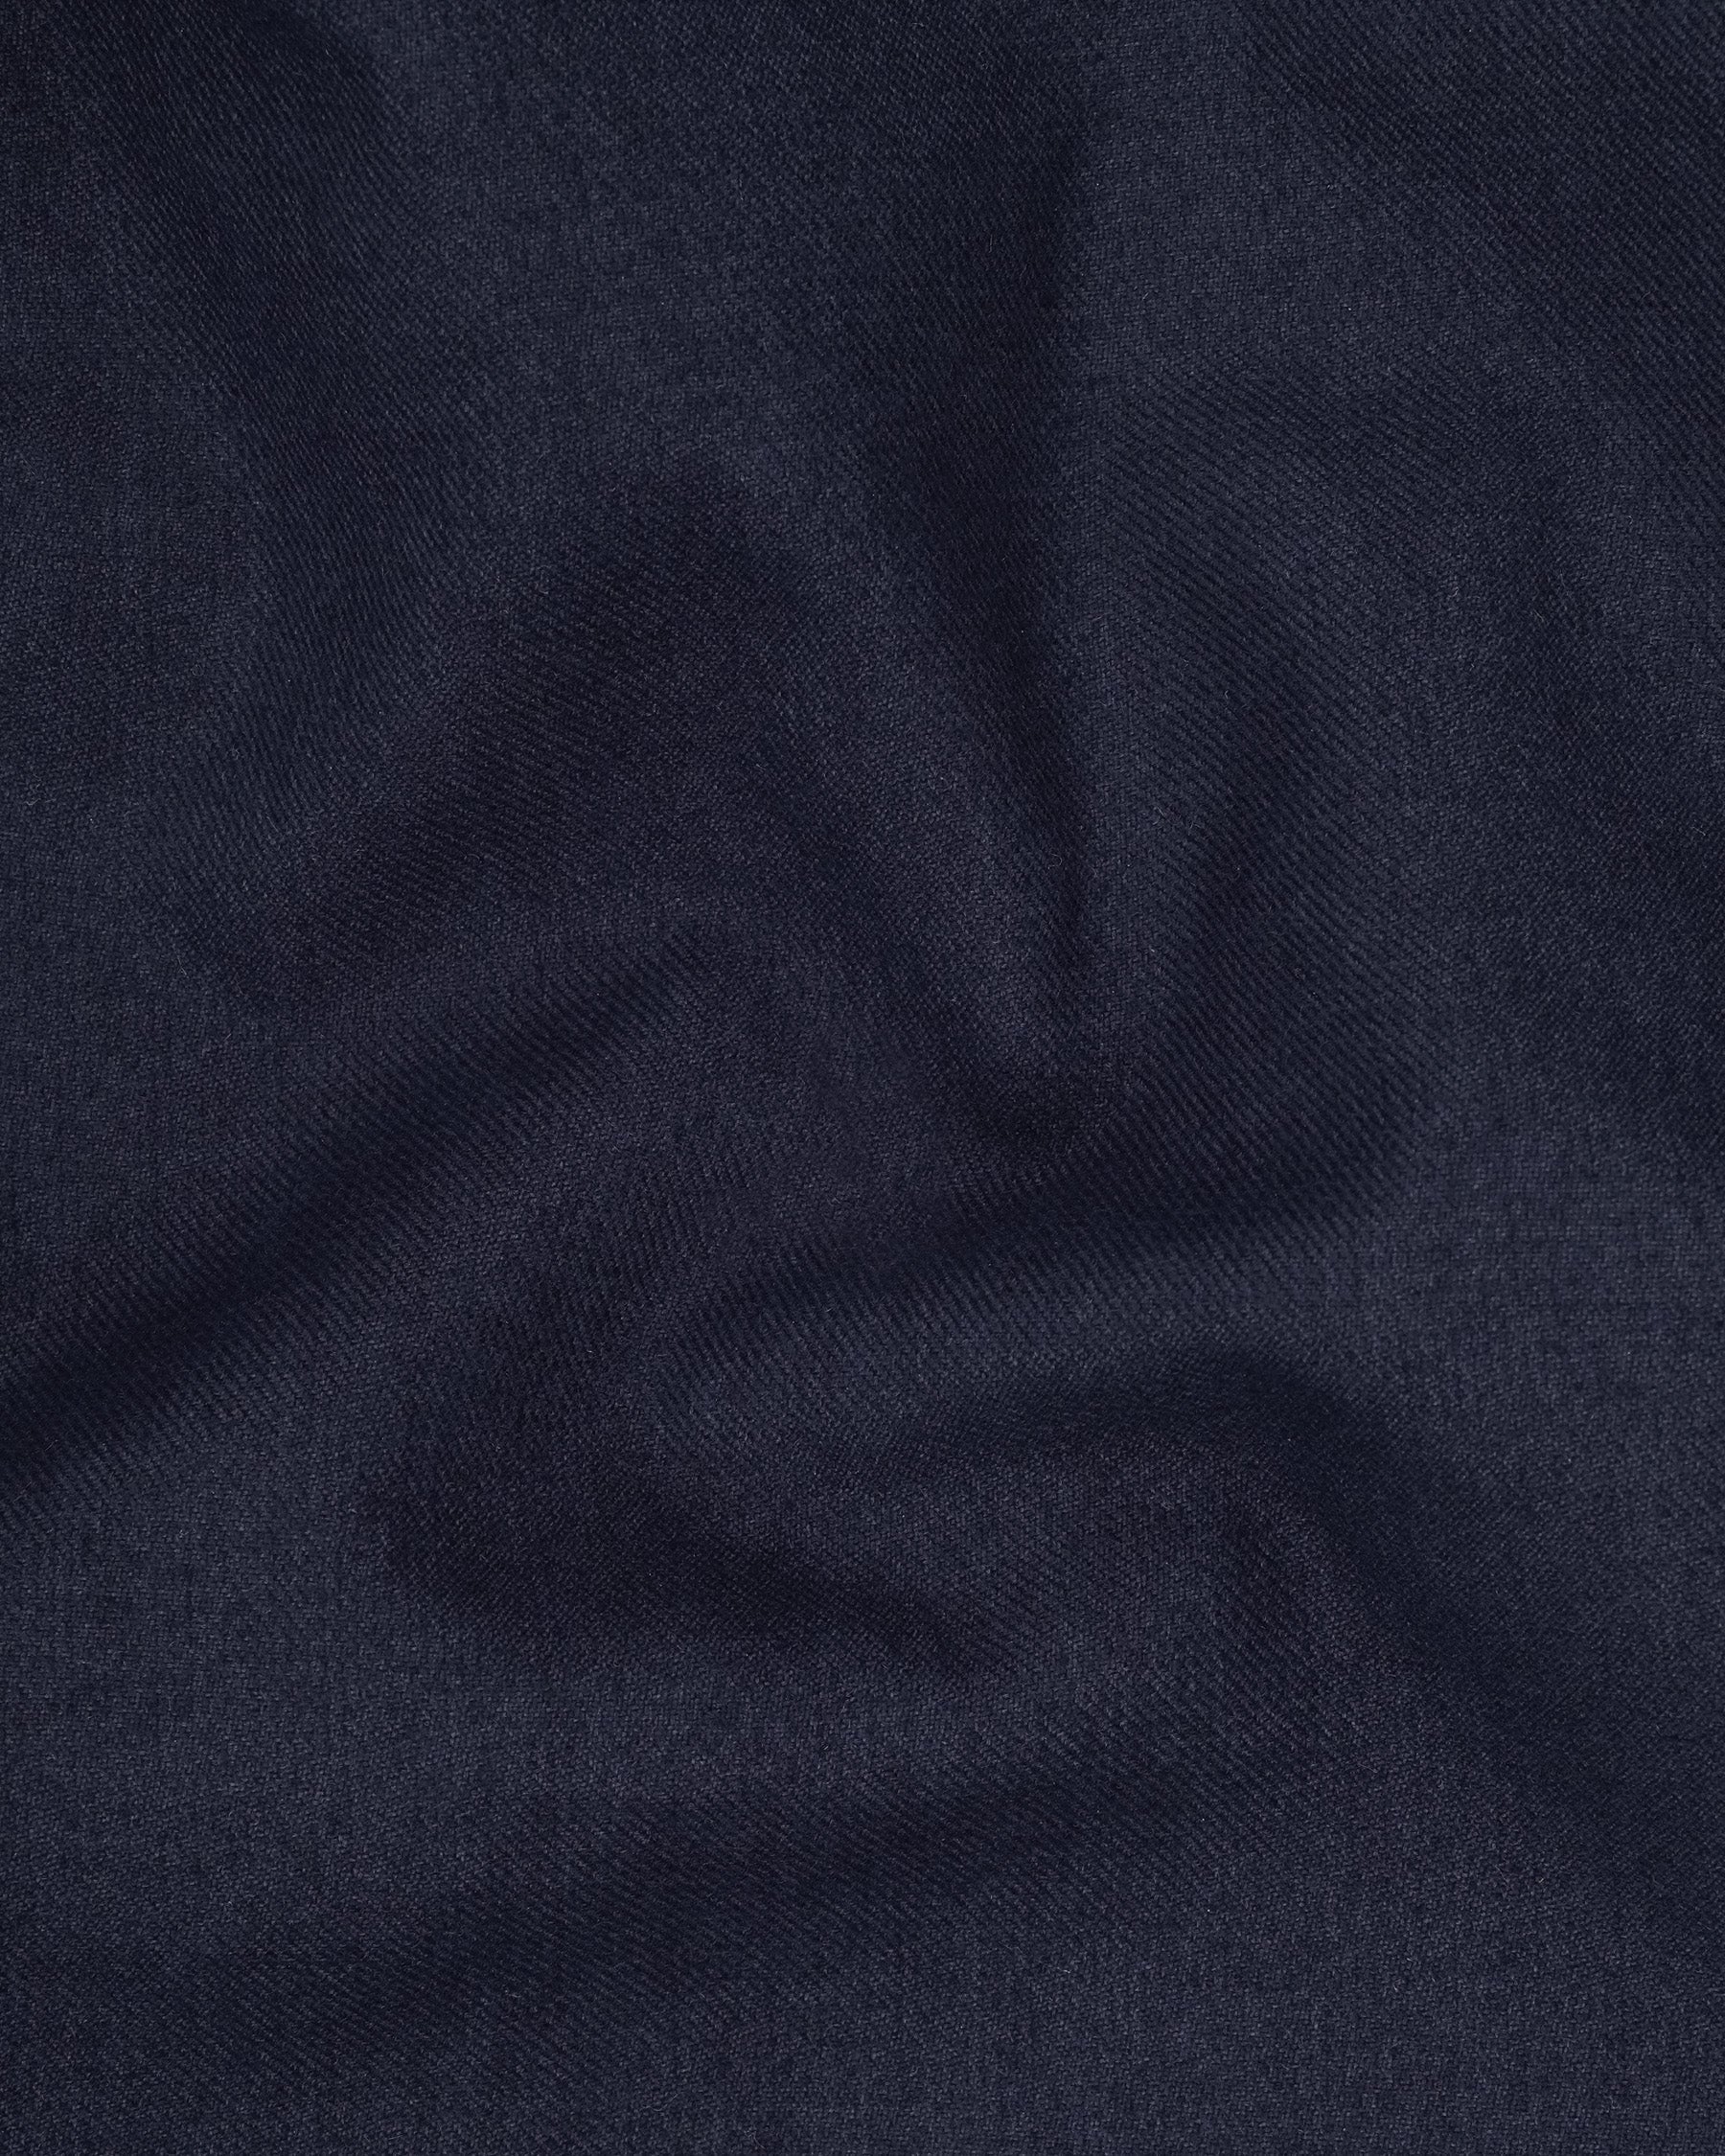 Baltic Navy Blue Wool Rich Waistcoat V2124-36, V2124-38, V2124-40, V2124-42, V2124-44, V2124-46, V2124-48, V2124-50, V2124-52, V2124-54, V2124-56, V2124-58, V2124-60